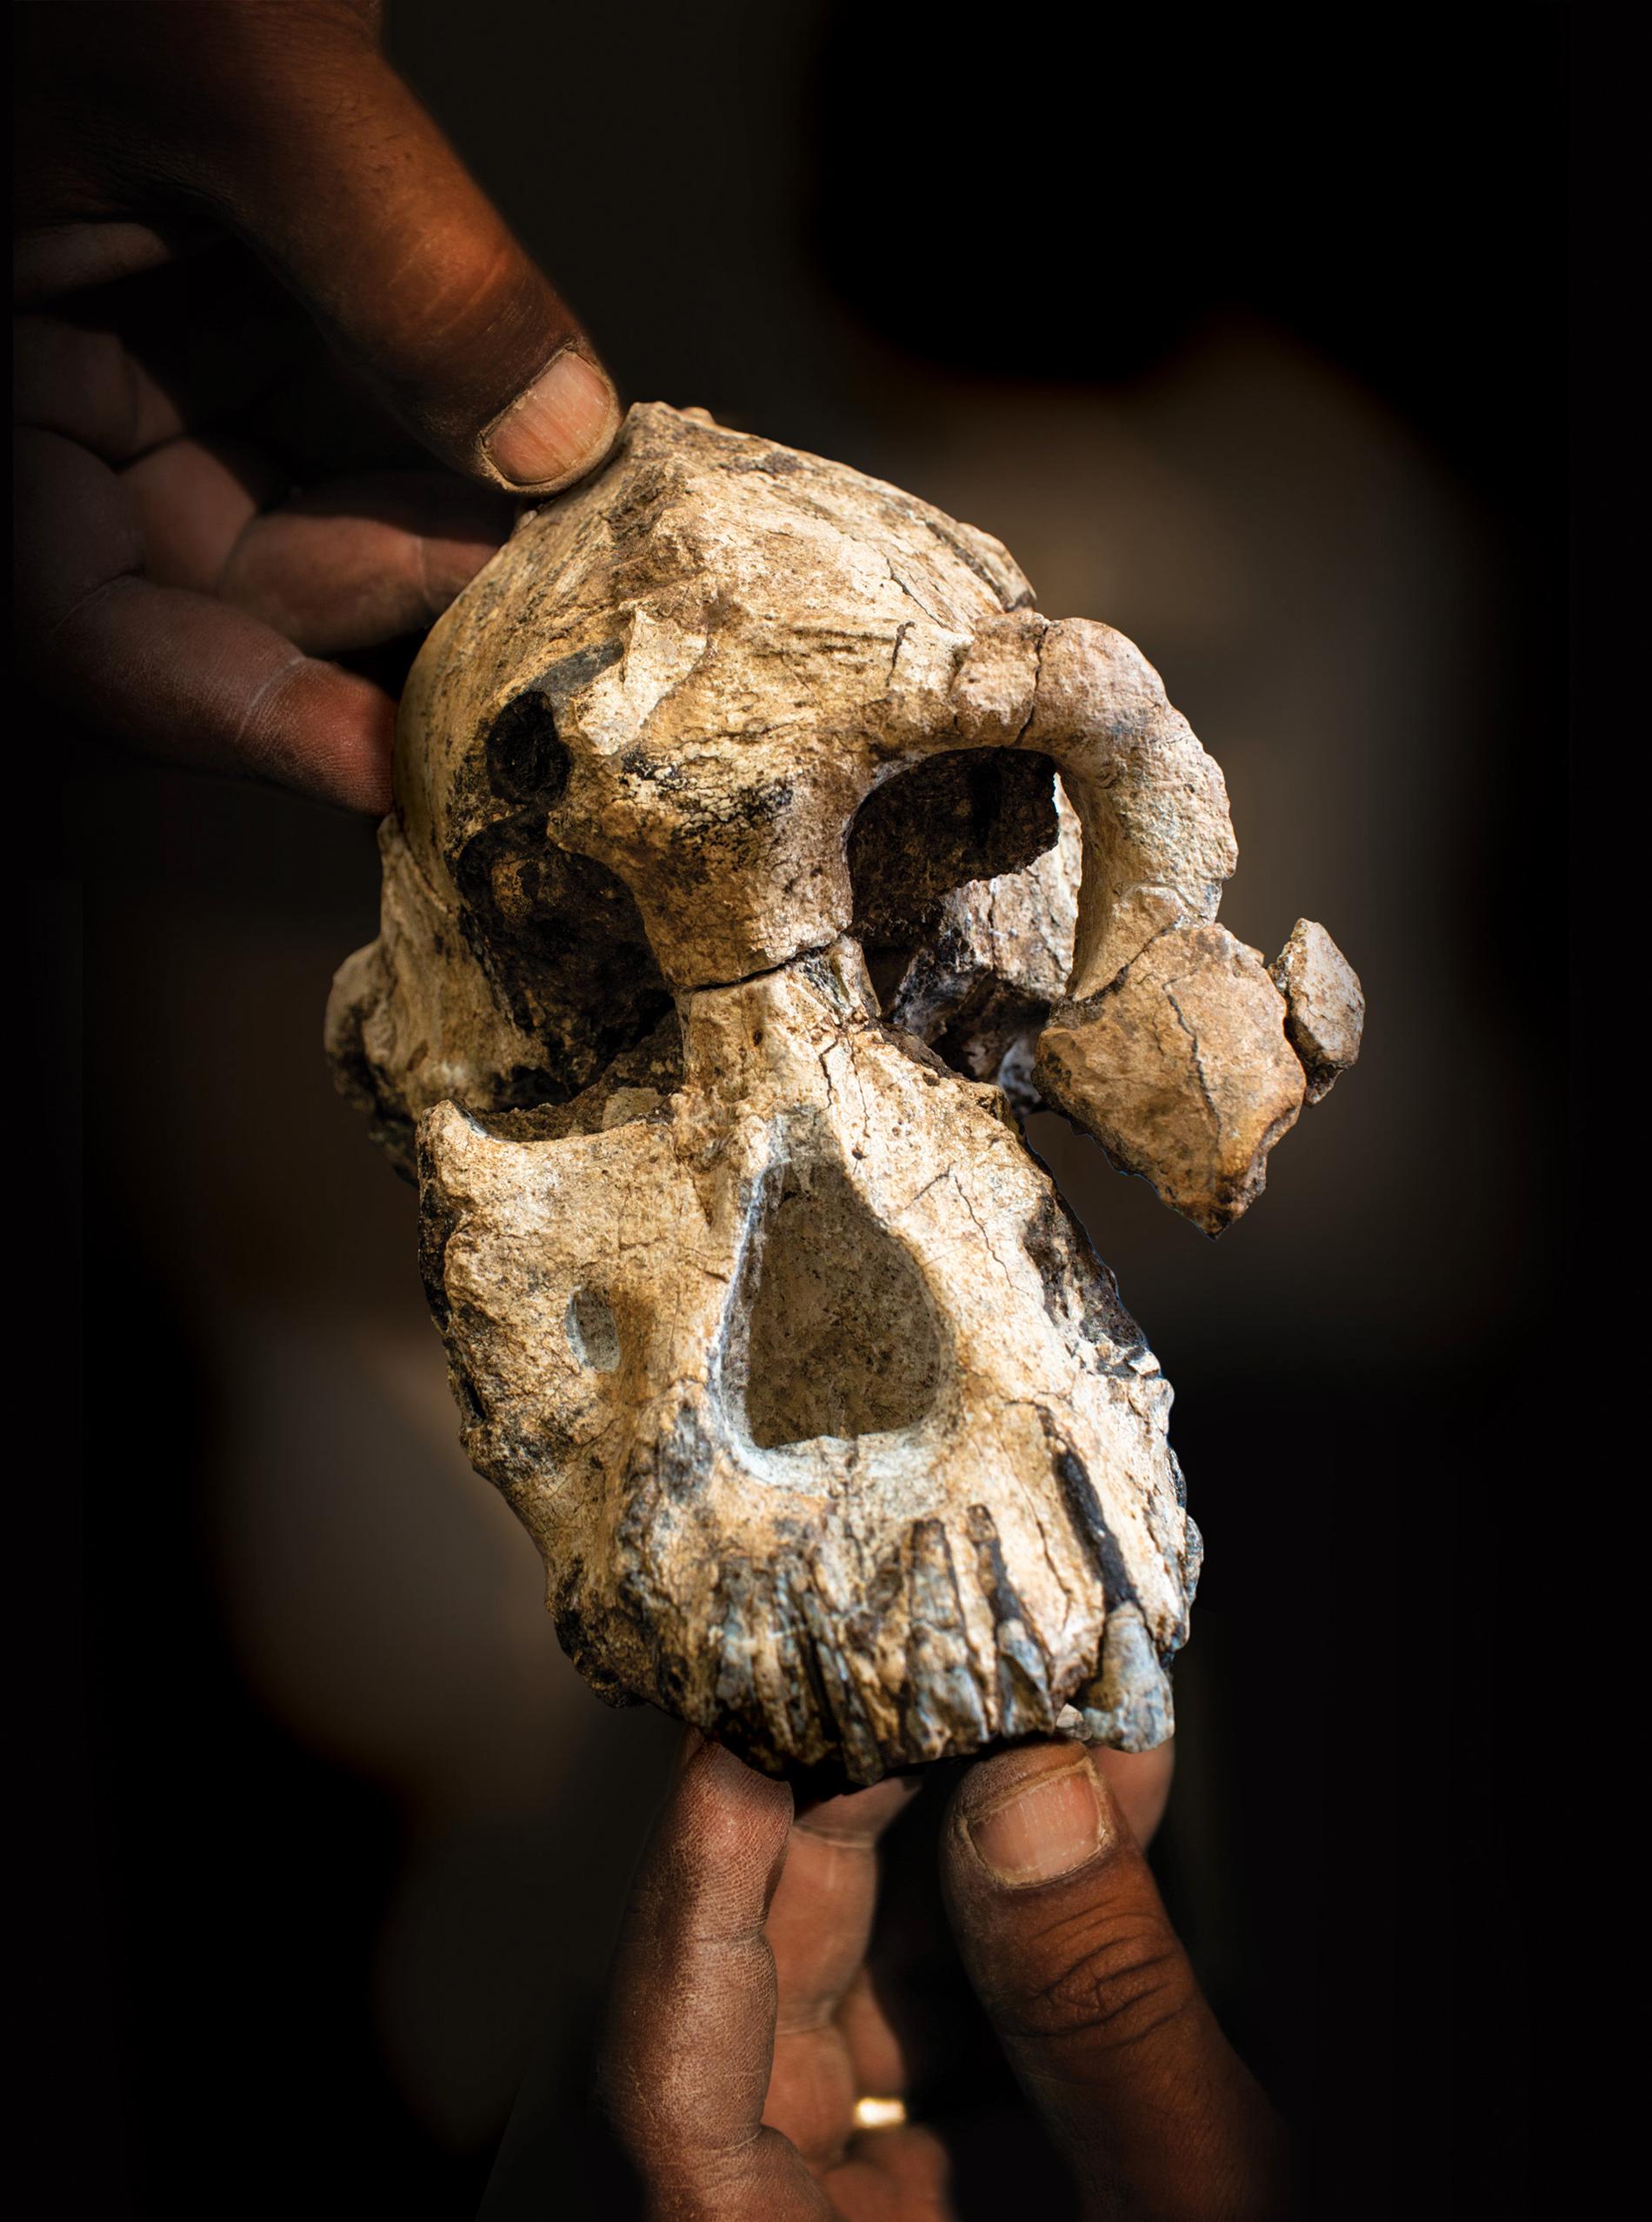 Trots sin litenhet tros skallen ha tillhört en fullvuxen hanne av arten Australopithecus anamensis som levde för 3,8 miljoner år sedan.